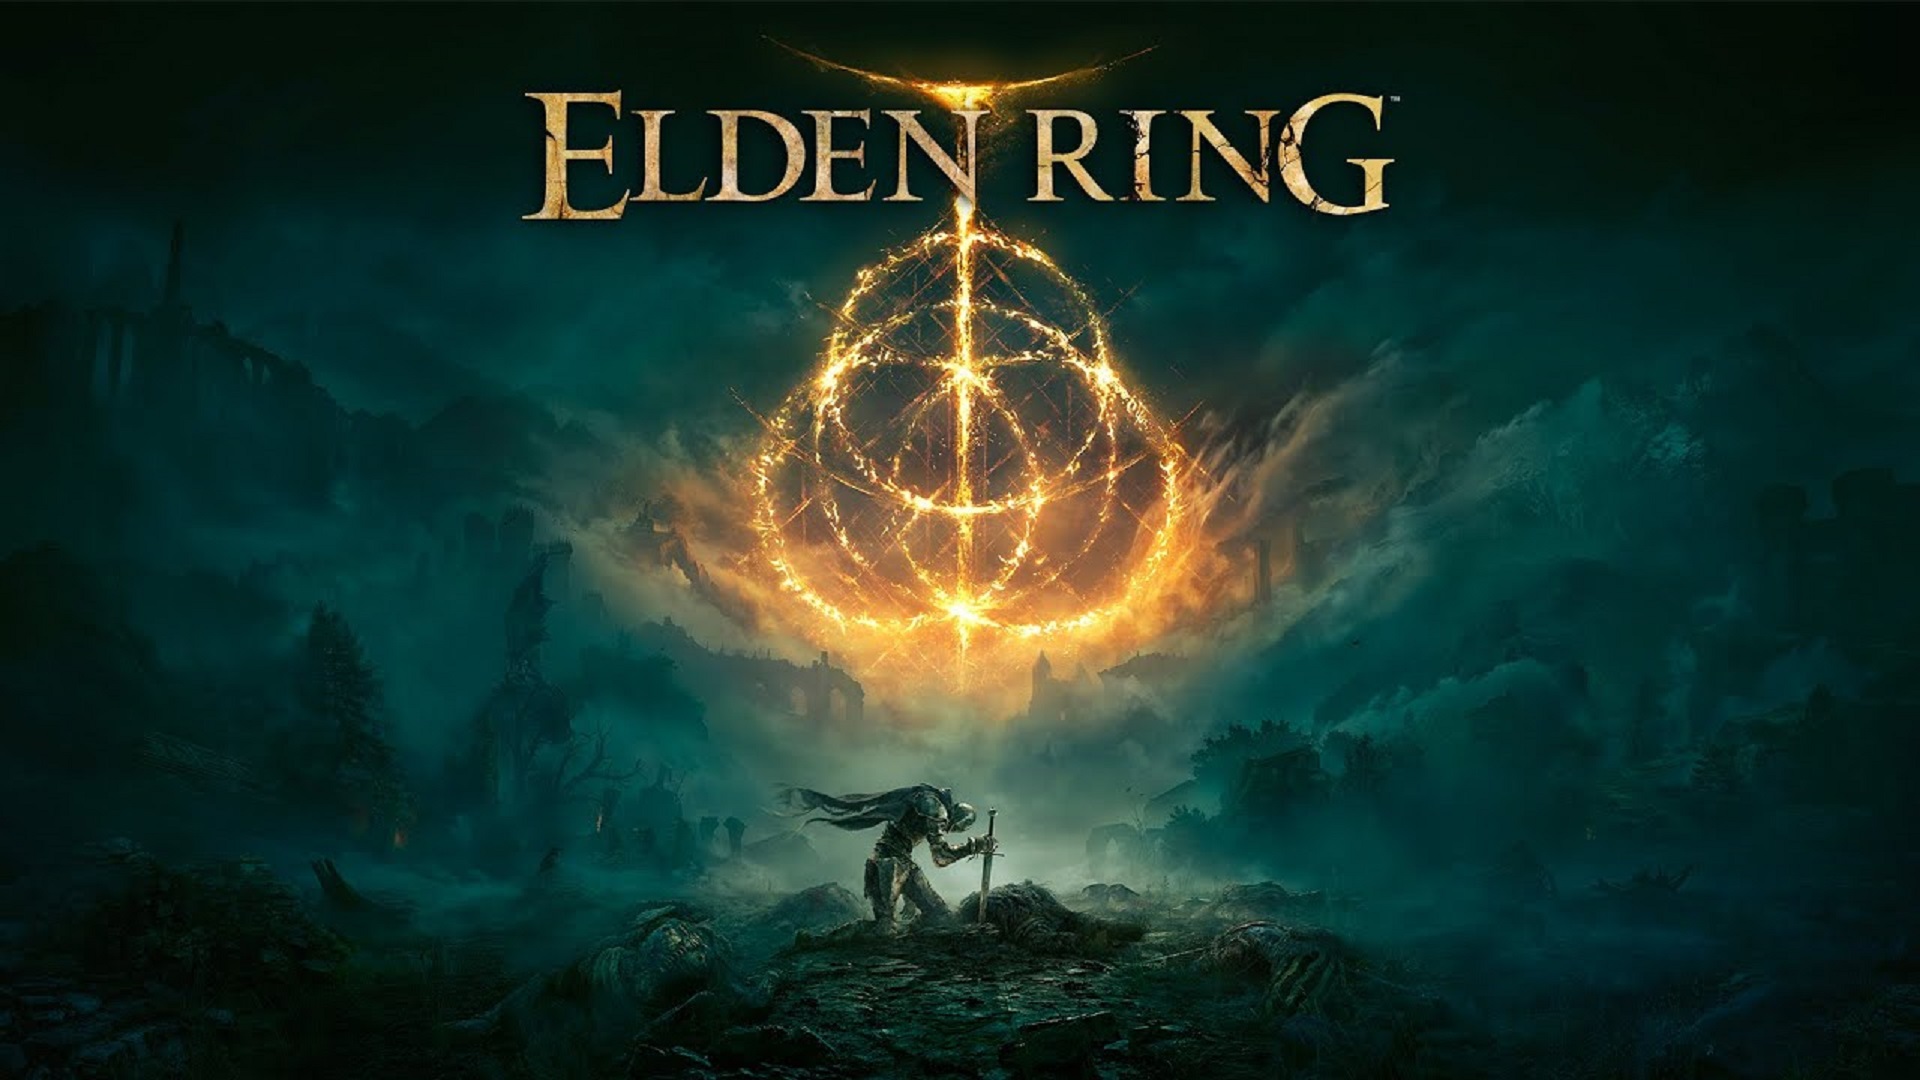 Elden Ring ทำยอดขายไปแล้วกว่า 13.4 ล้านชุดทั่วโลก